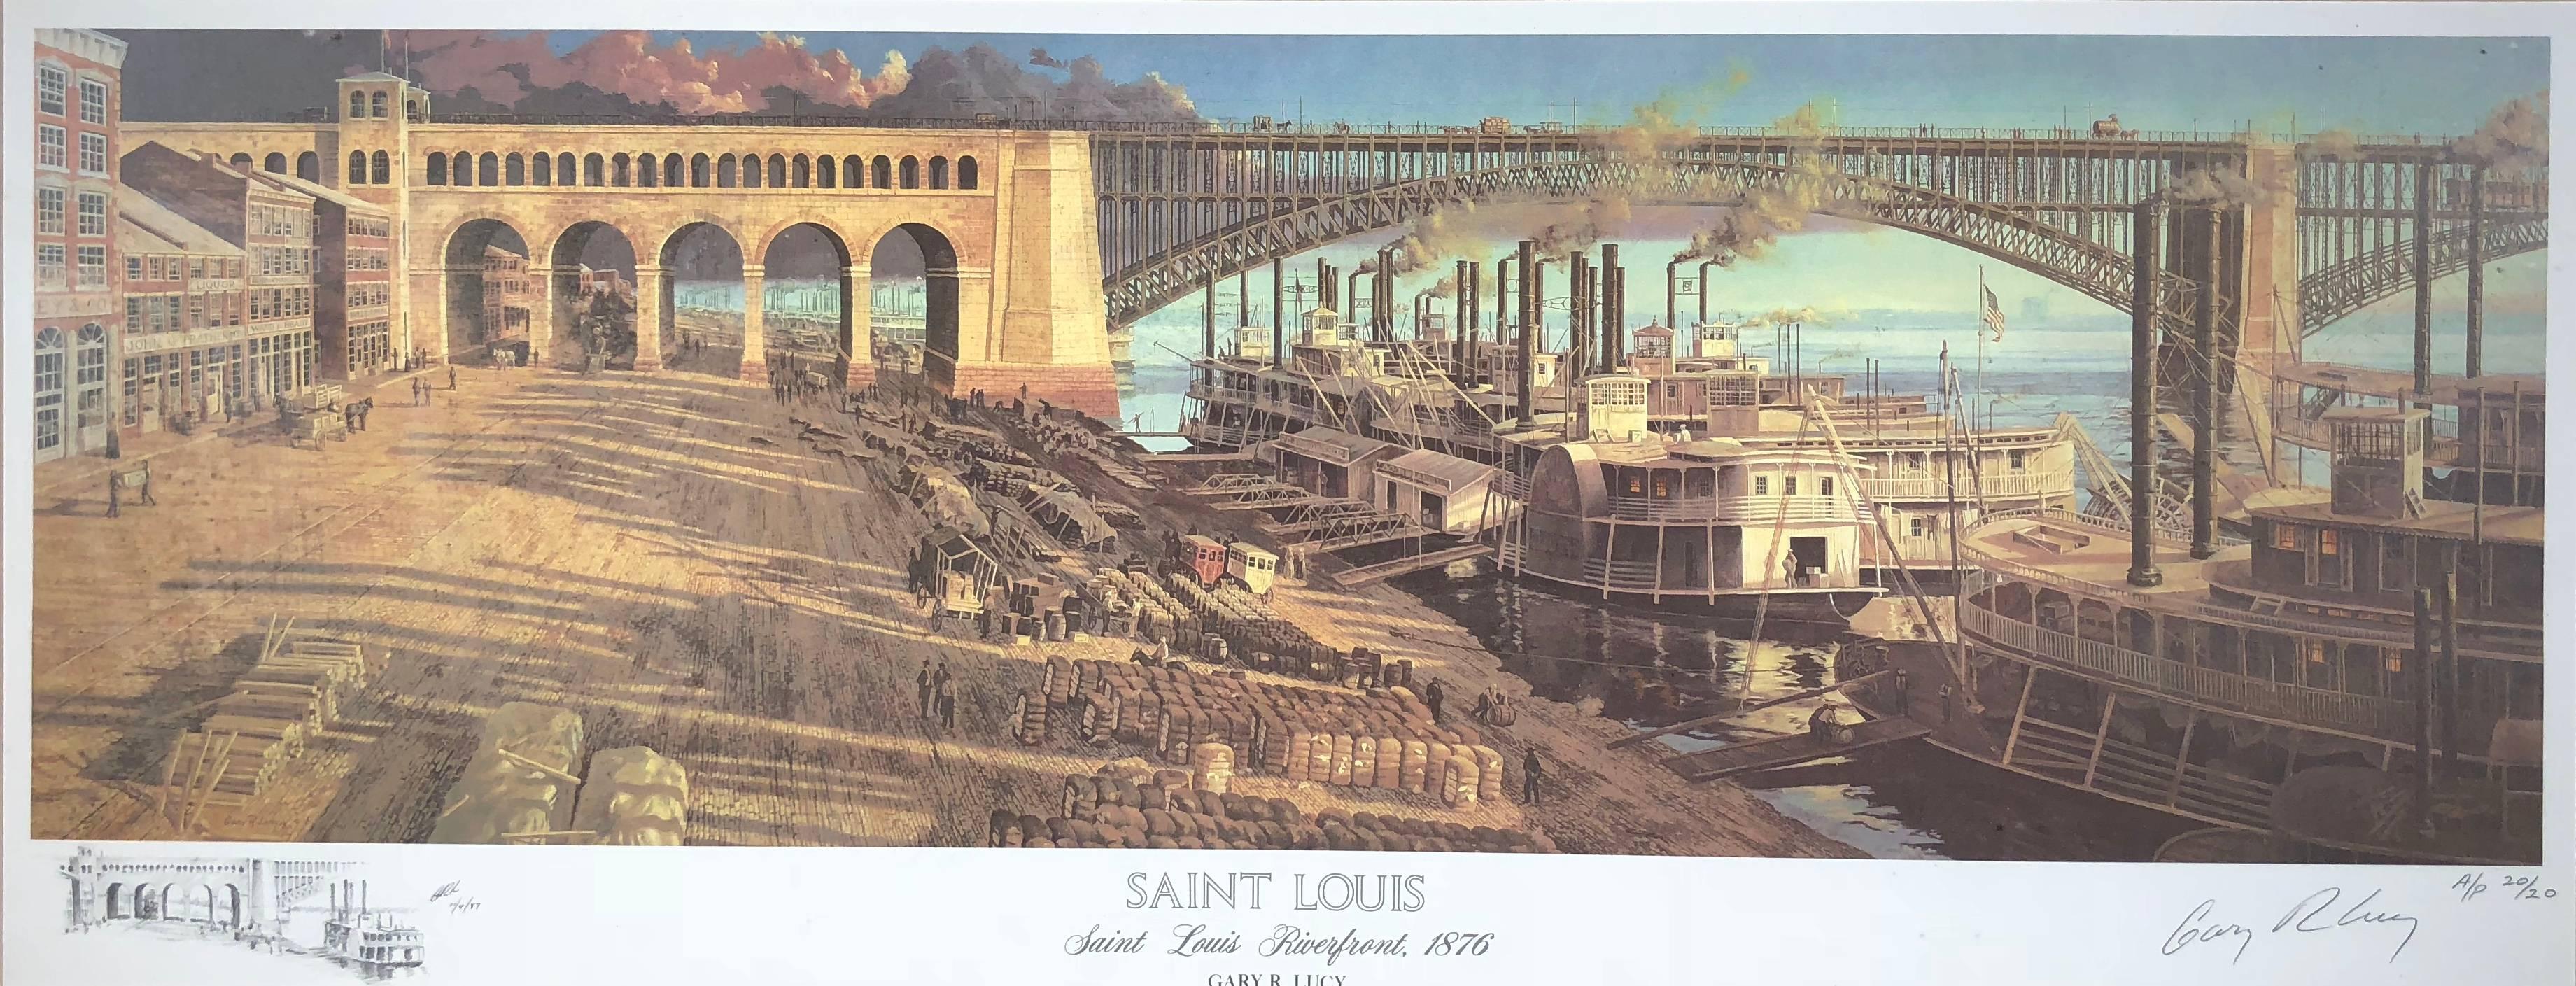 Gary Lucy Landscape Print - Saint Louis Riverfront 1876